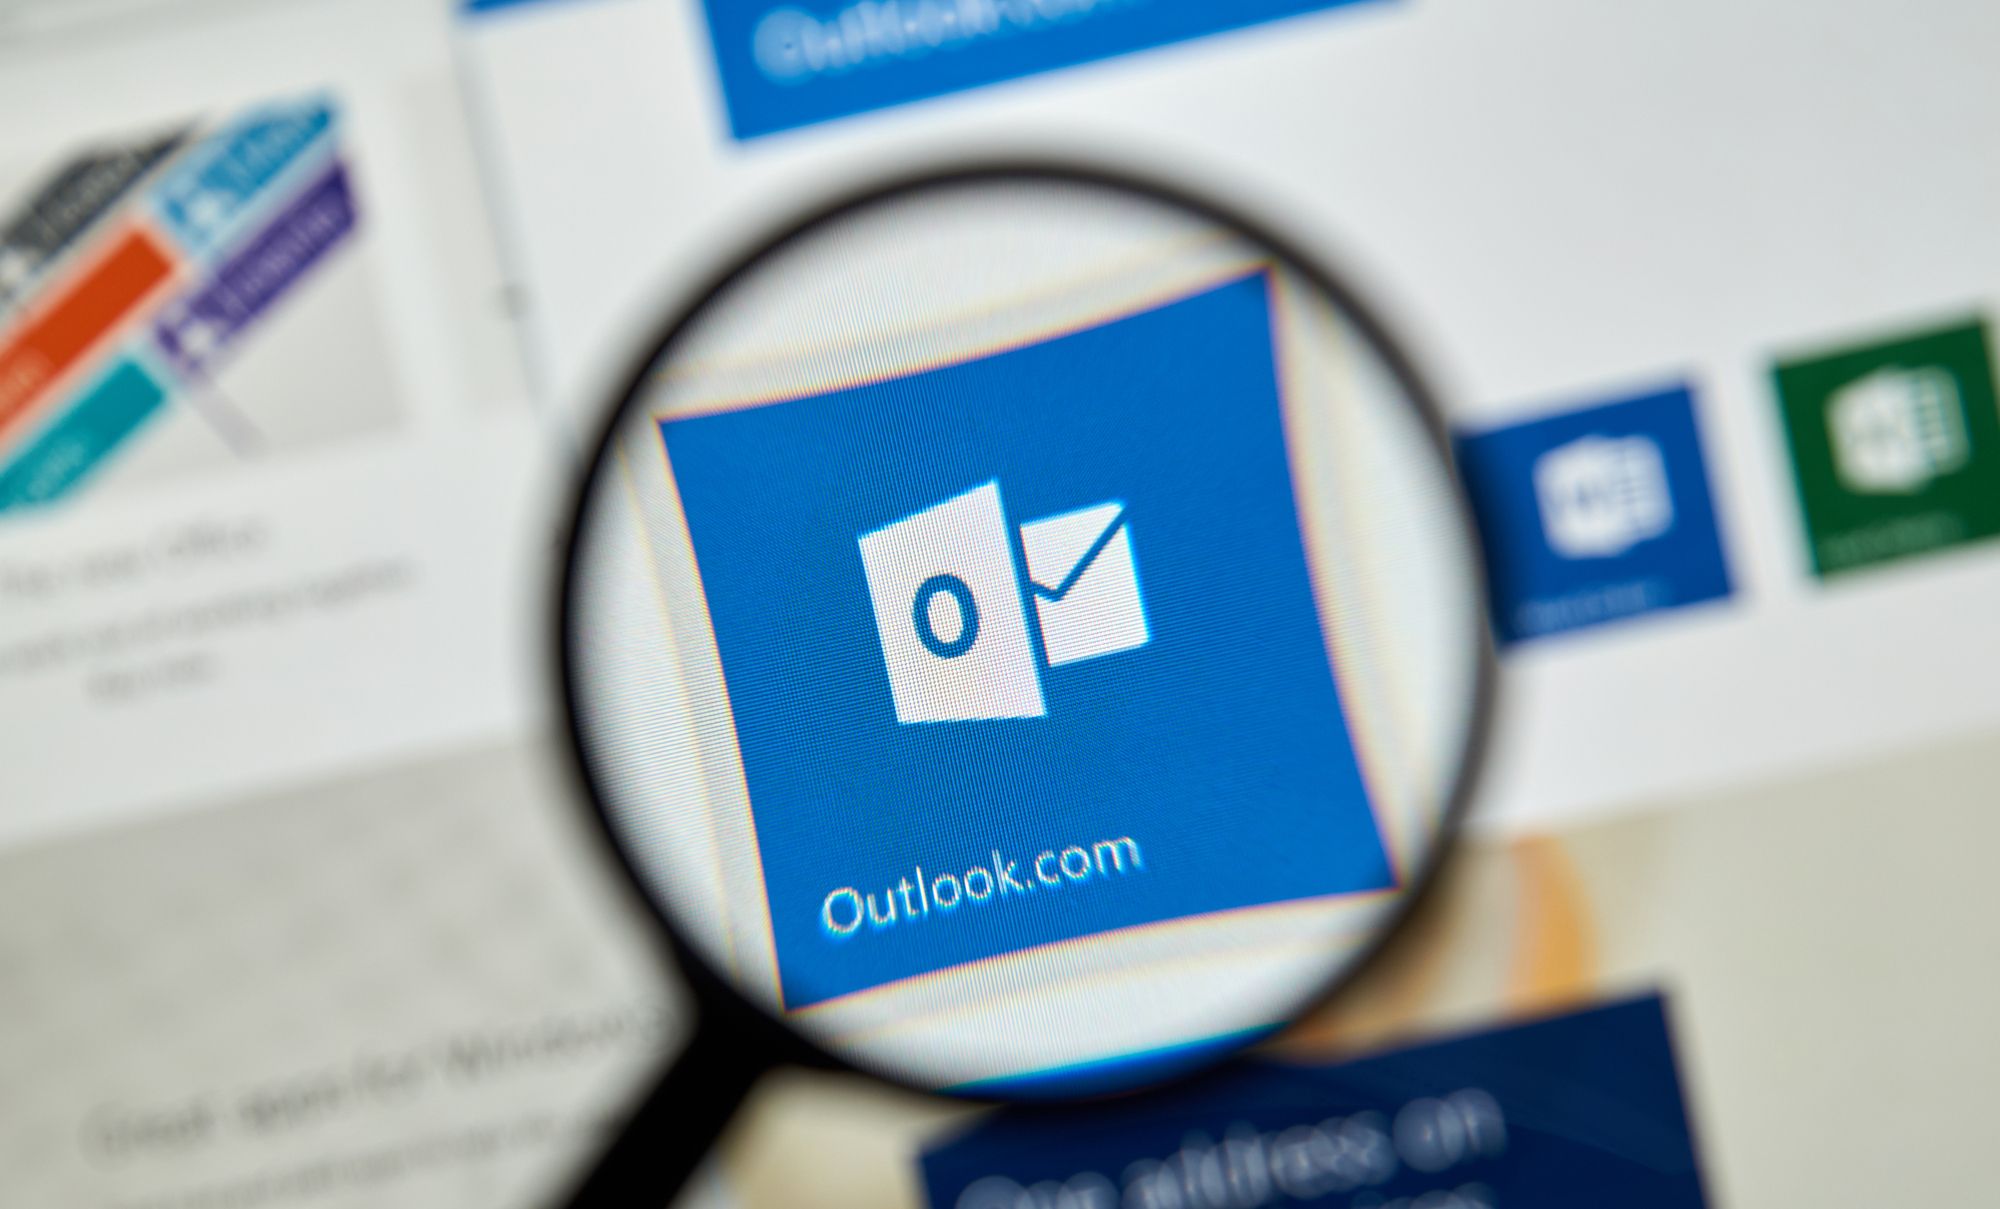 Microsoft One Outlook: App neu auch für Privat-Konten zugänglich